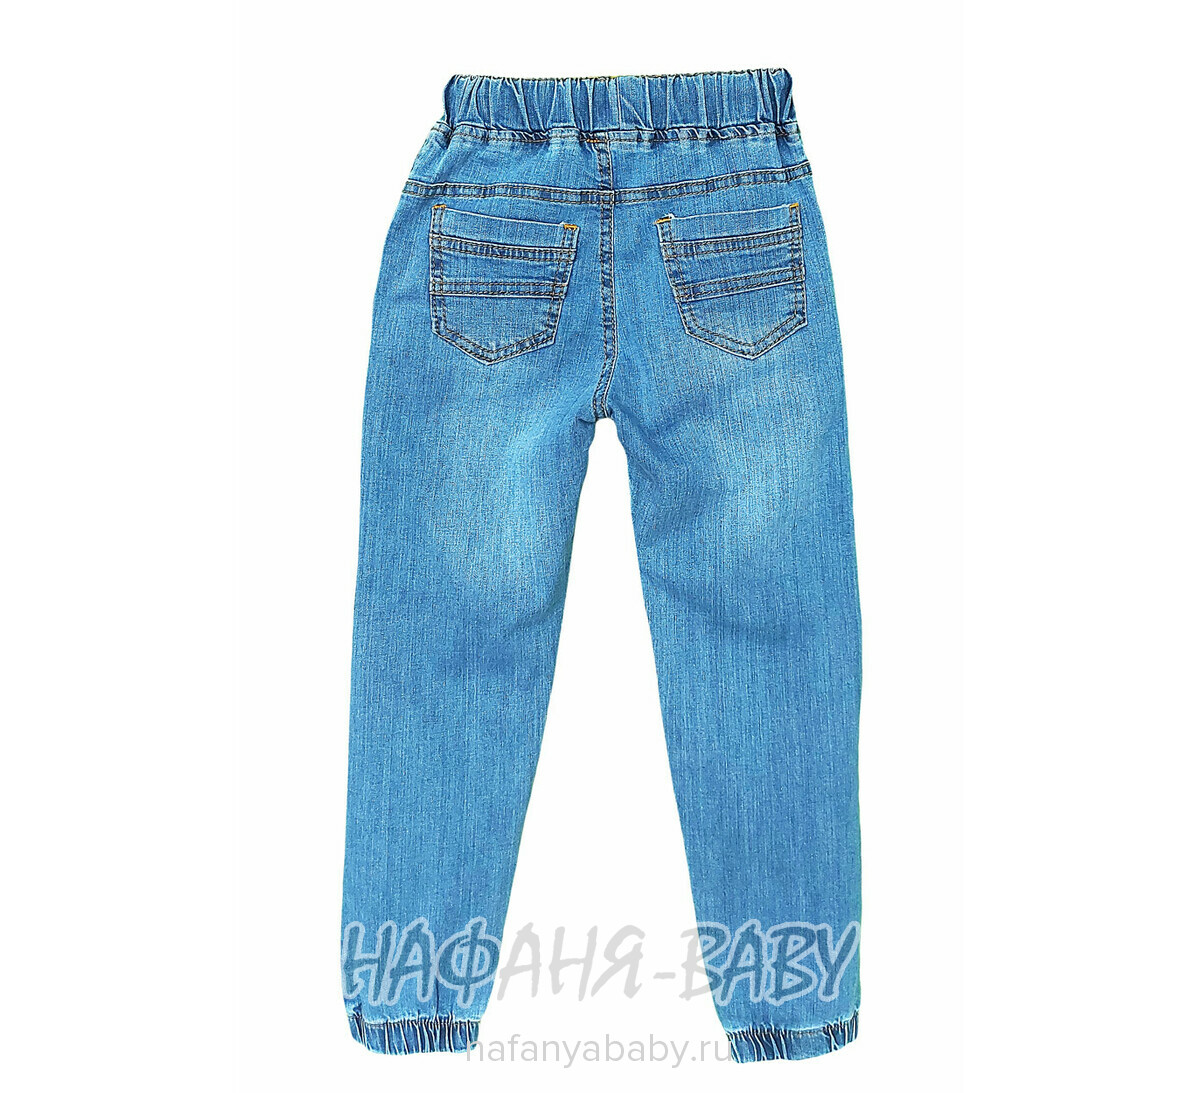 Детские джинсы VNR арт: 8524-1 для мальчика 6-10 лет, цвет синий, оптом Турция